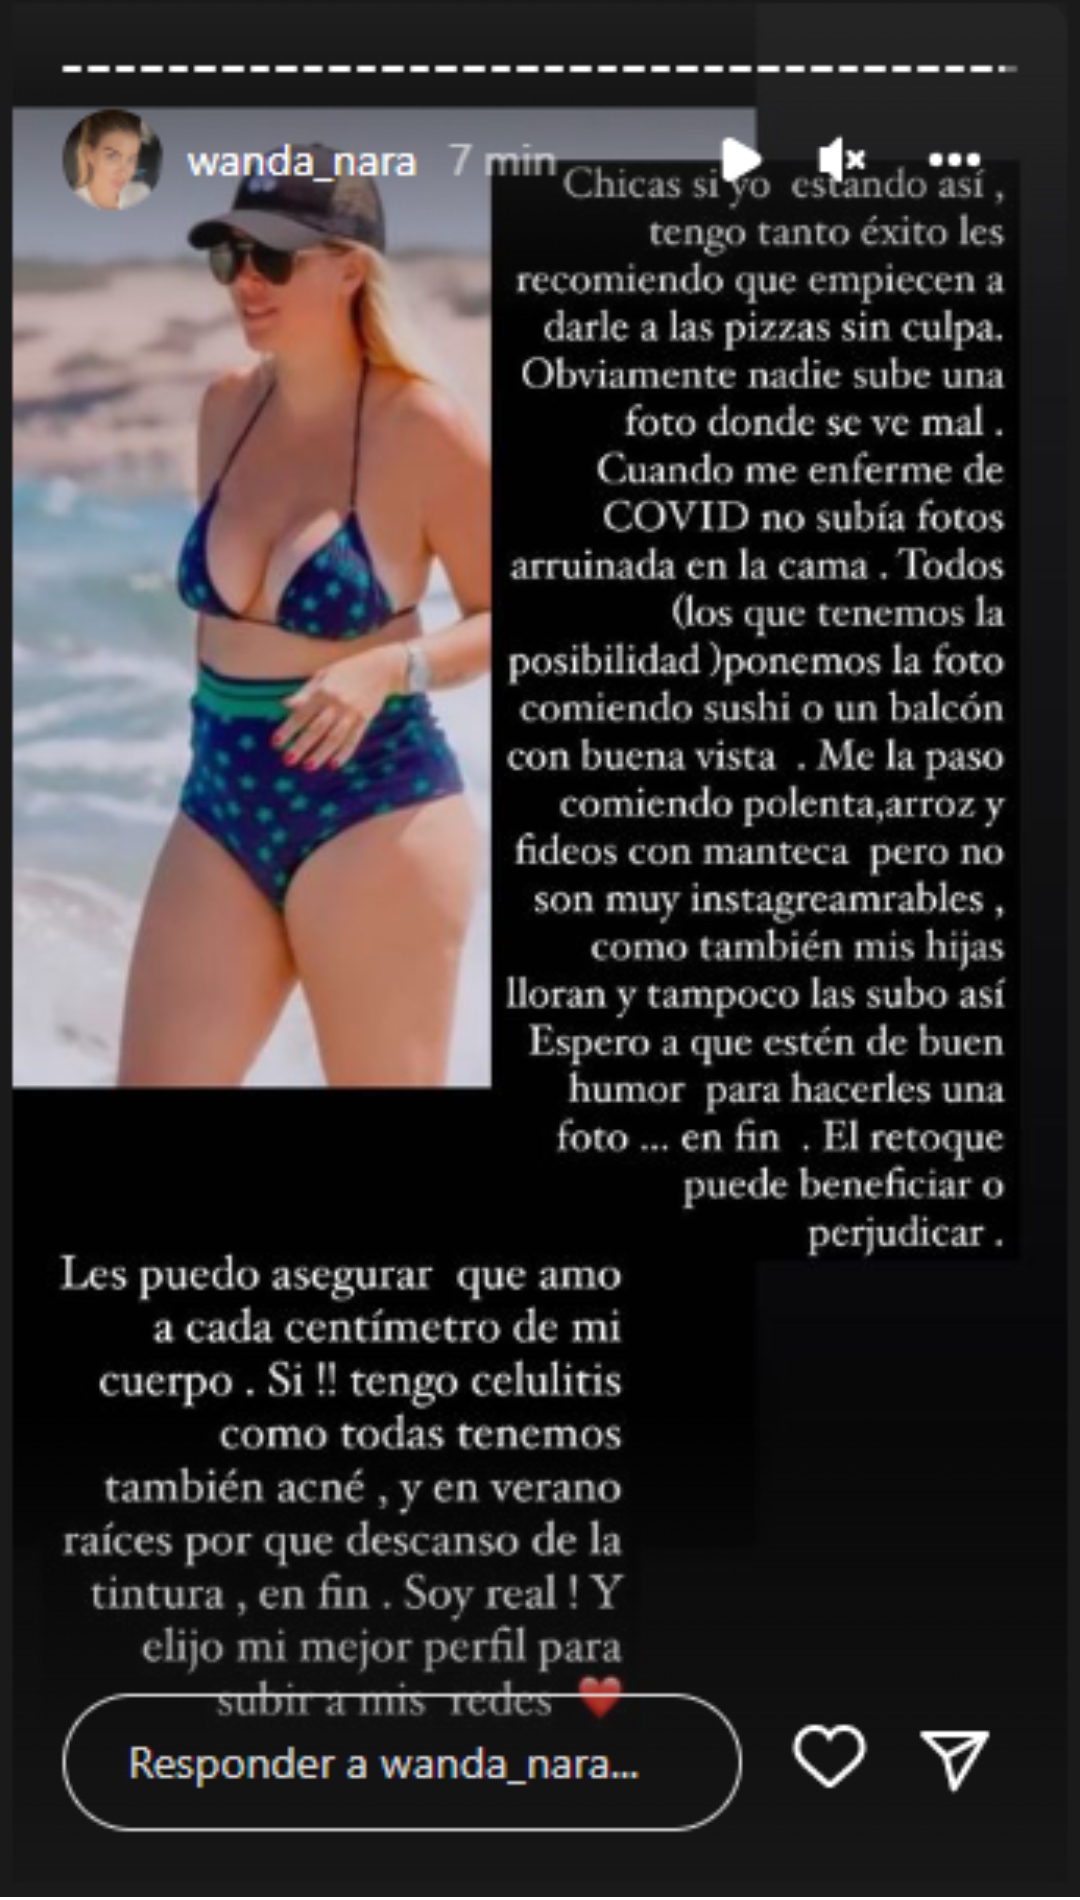 El texto que publicó Wanda Nara sobre sus fotos en bikini, donde le recomendó a sus seguidoras que coman pizza